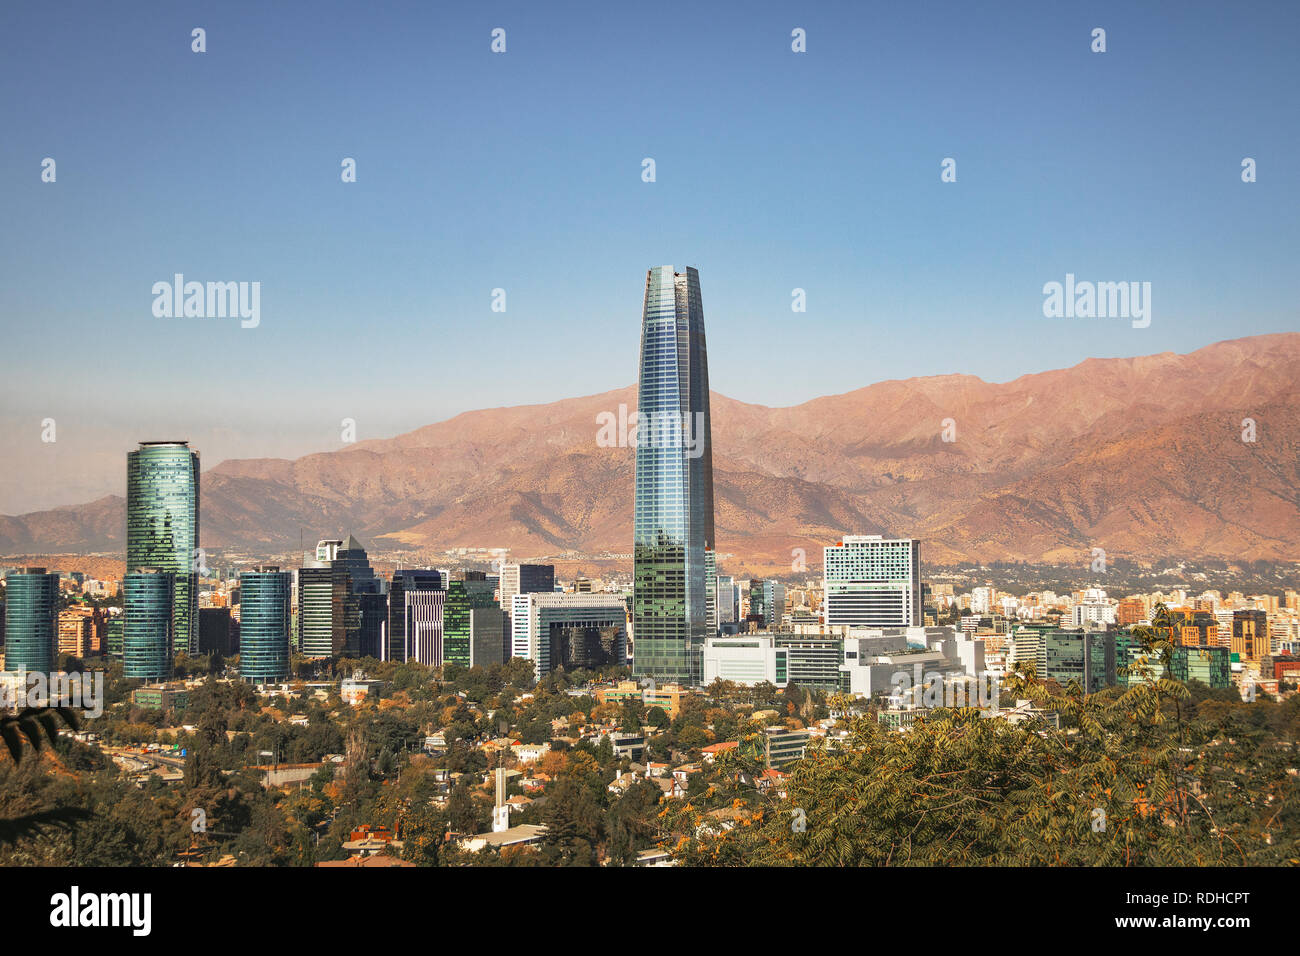 Aaerial de Santiago avec vue sur les toits de gratte-ciel Costanera et montagnes des Andes - Santiago, Chili Banque D'Images